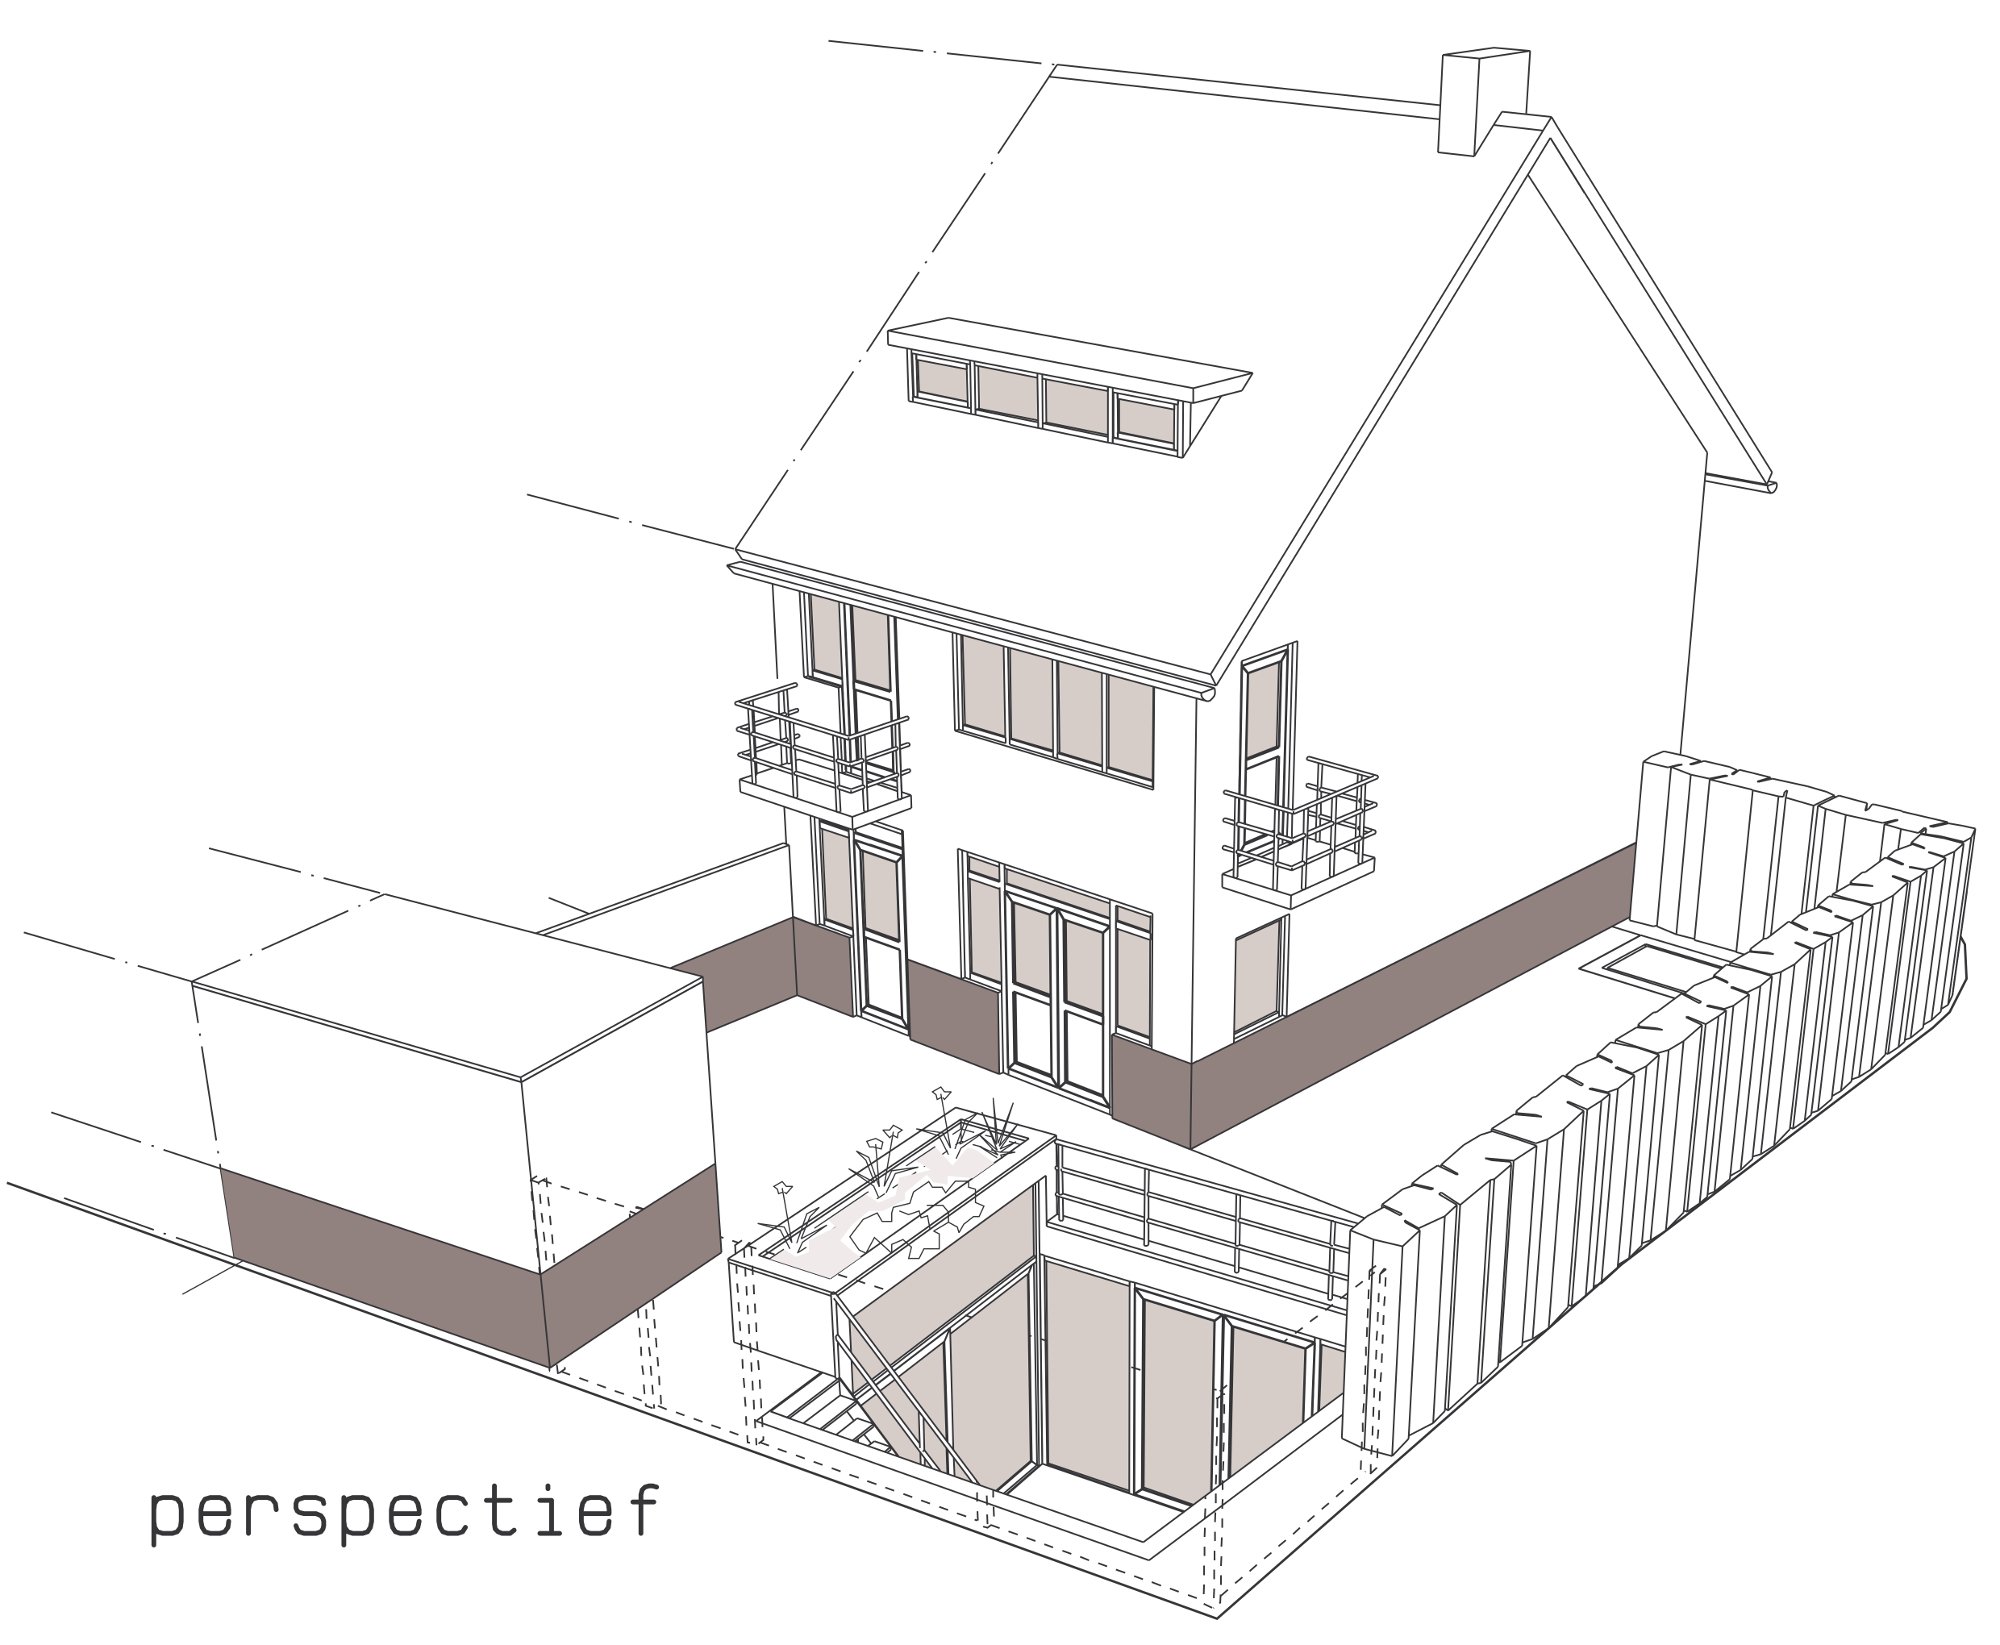 3D perspectief - Onderkeldering woonhuis Witte Dorp, Eindhoven - BEELEN CS architecten Eindhoven